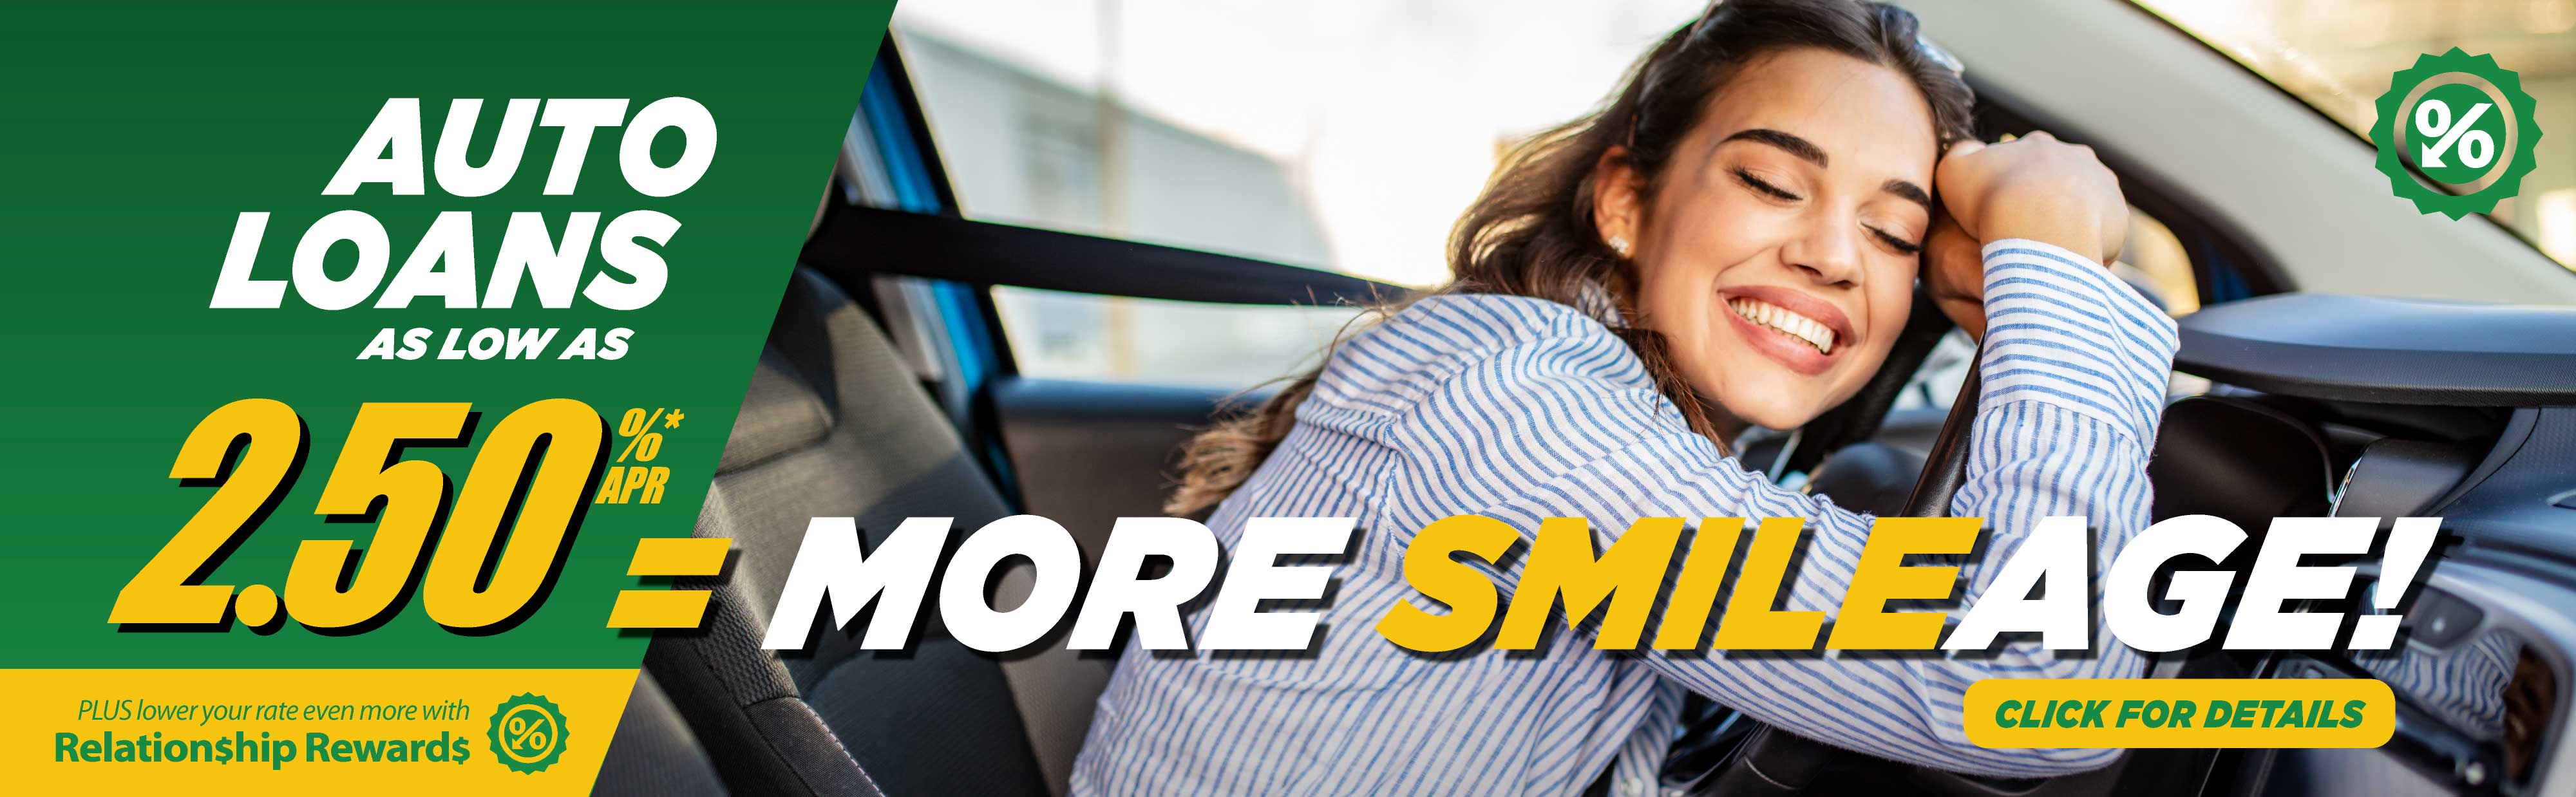 More Smileage. Auto Loans.